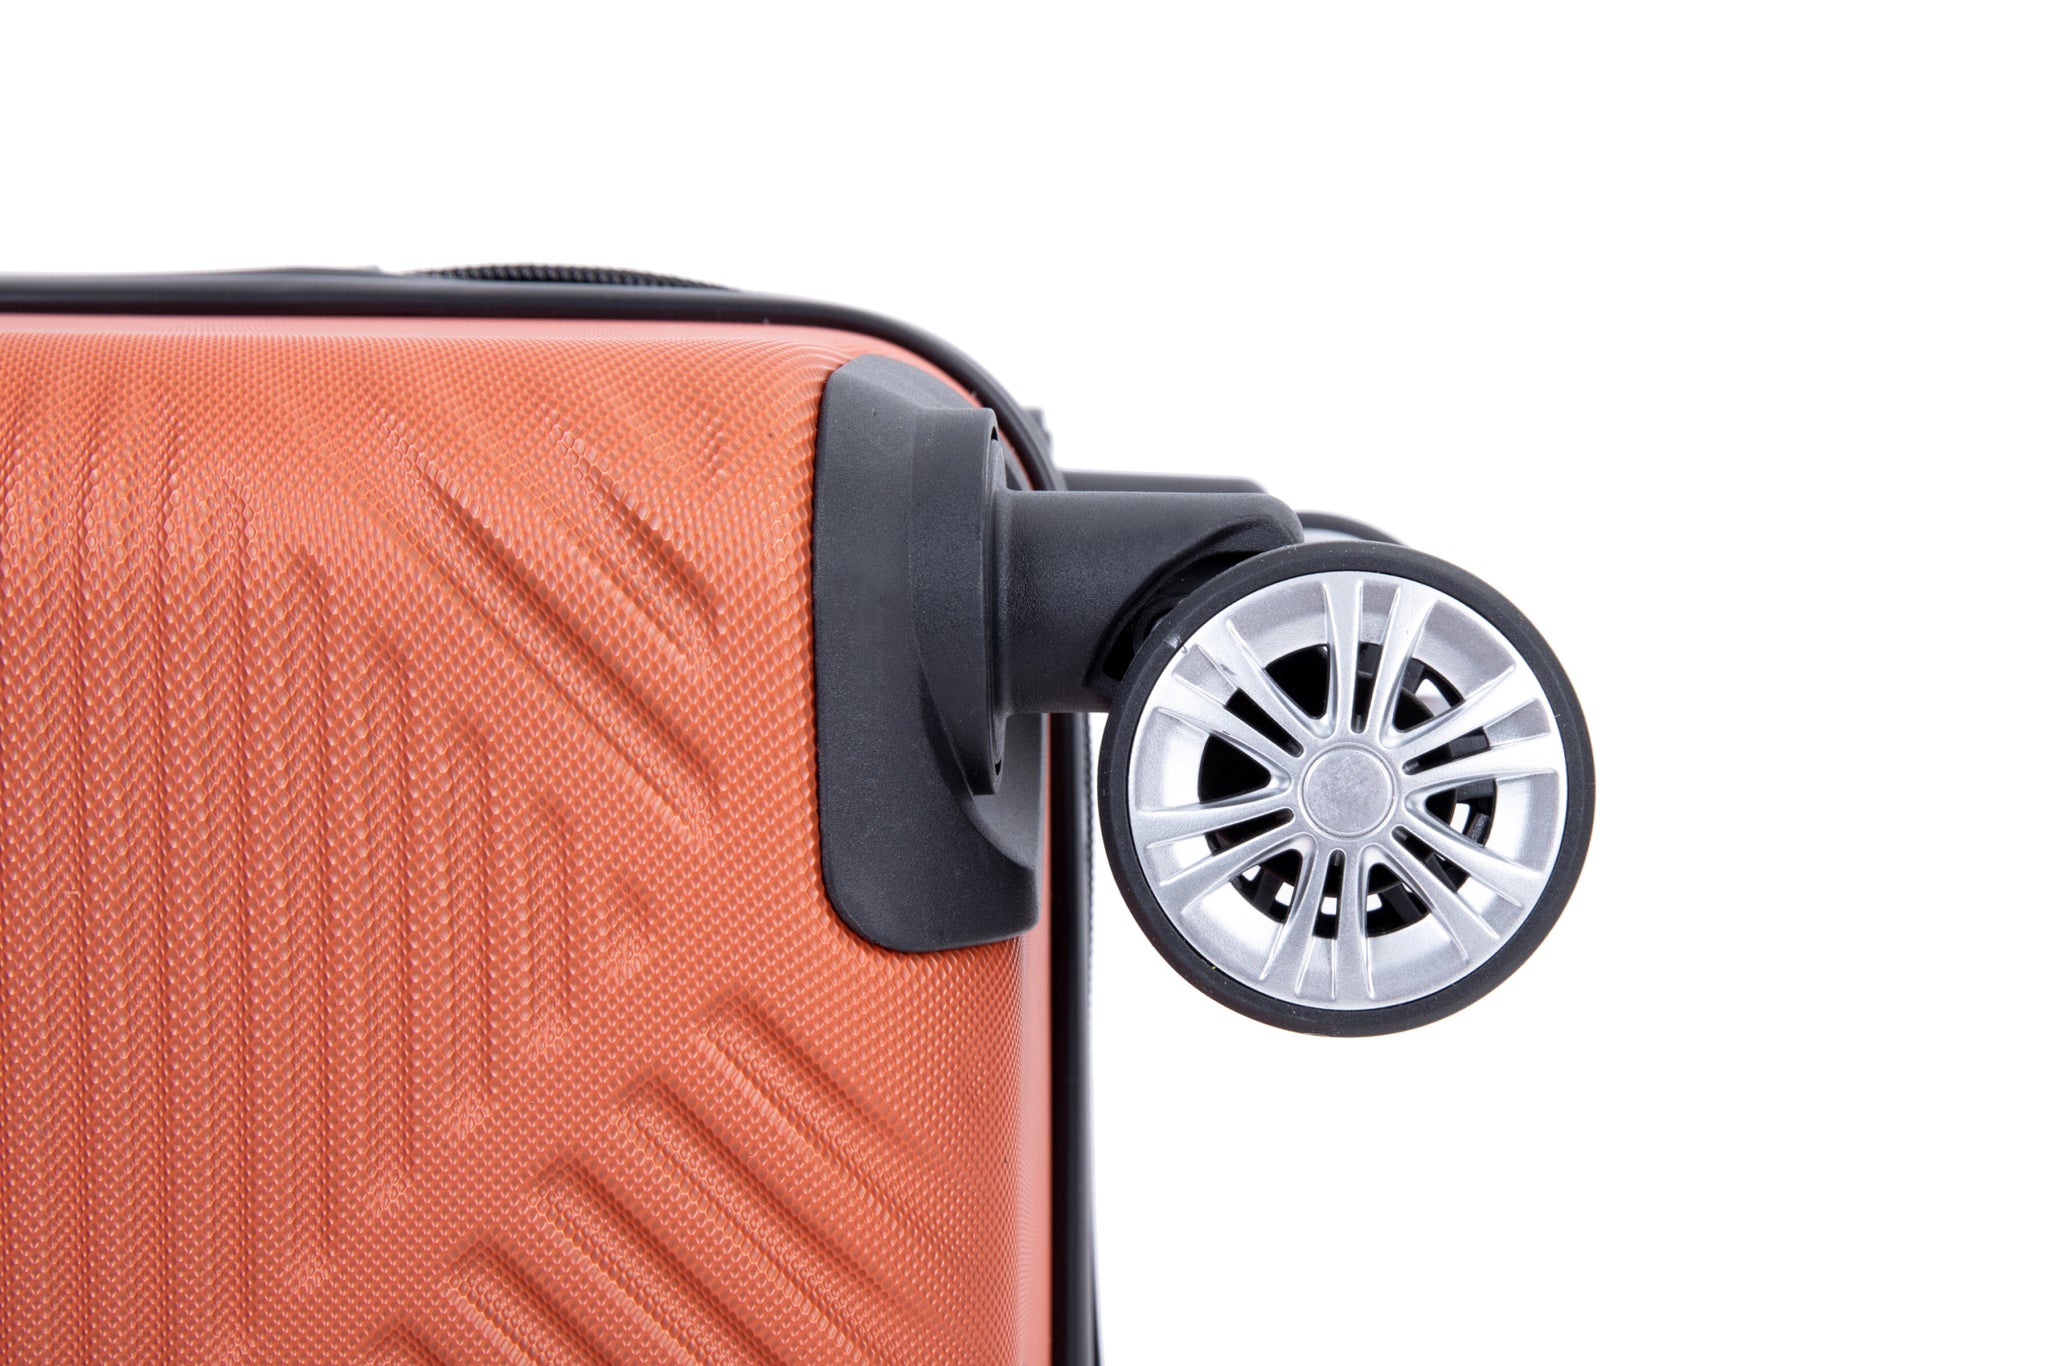 2Piece Luggage Sets ABS Lightweight Suitcase , Spinner orange+dark orange-abs